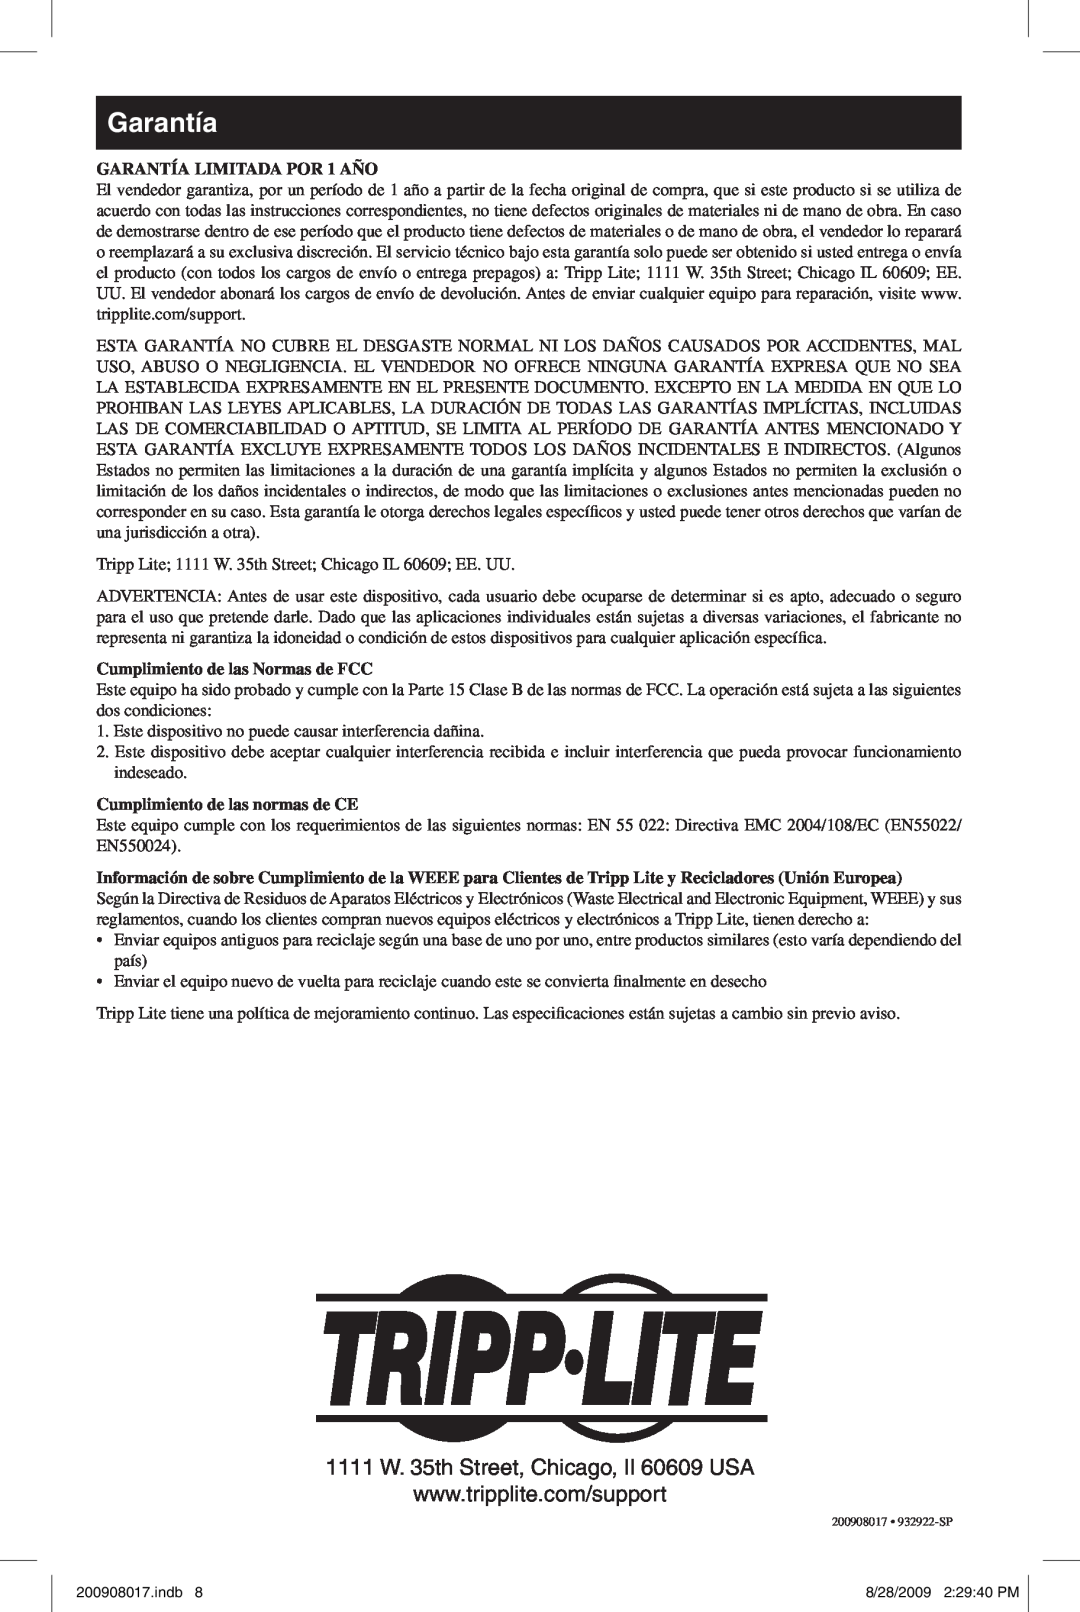 Tripp Lite U230-204-R warranty Garantía, GARANTÍA LIMITADA POR 1 AÑO, Cumplimiento de las Normas de FCC 